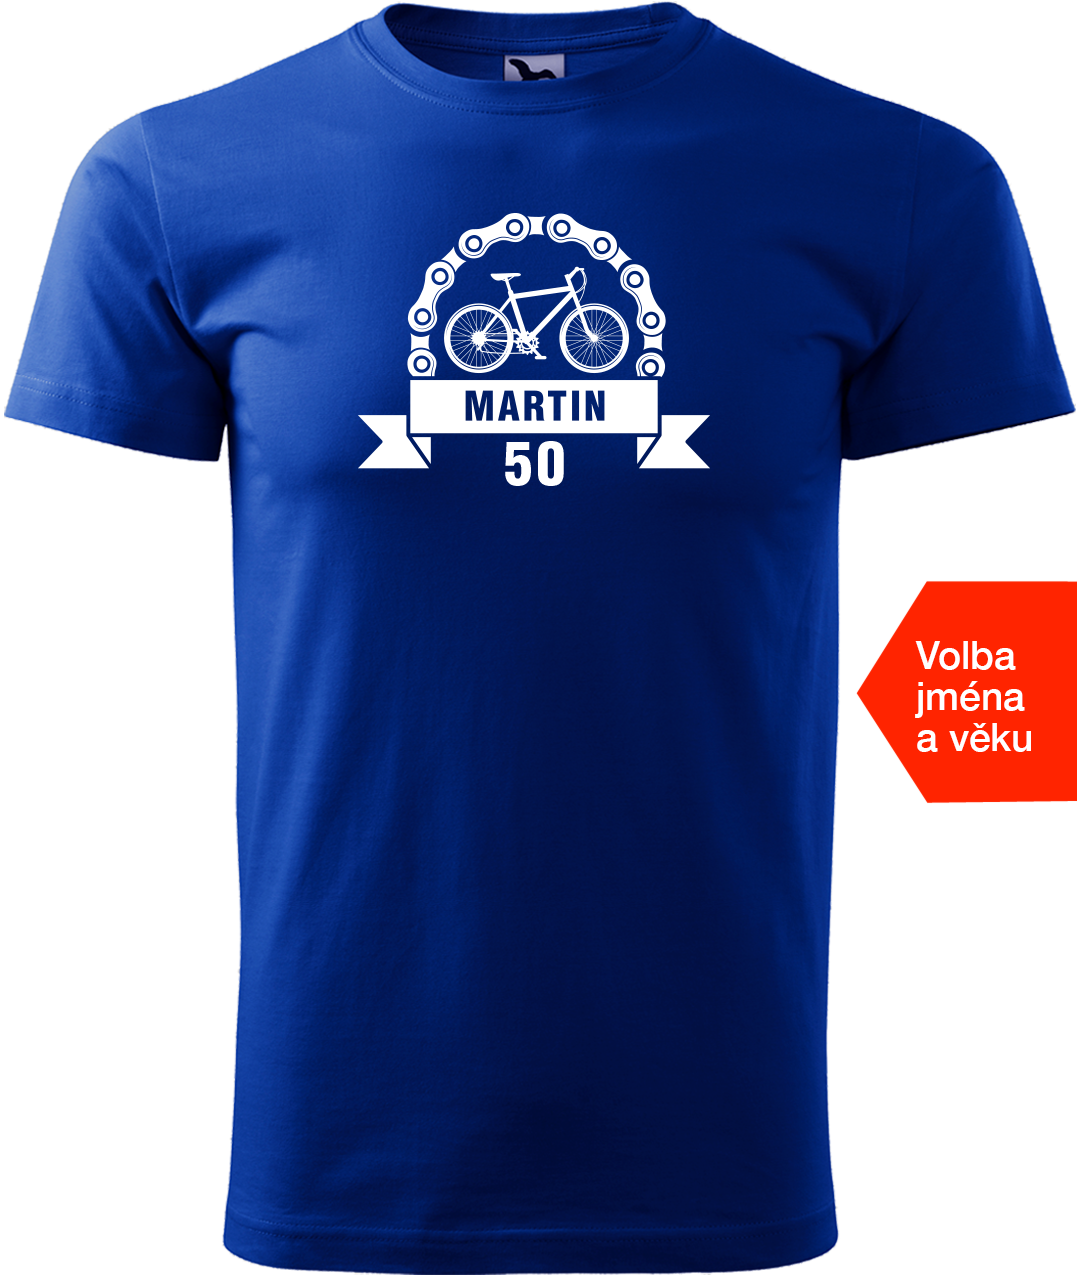 Pánské tričko pro cyklistu se jménem a věkem - Blahopřání Velikost: XL, Barva: Královská modrá (05)